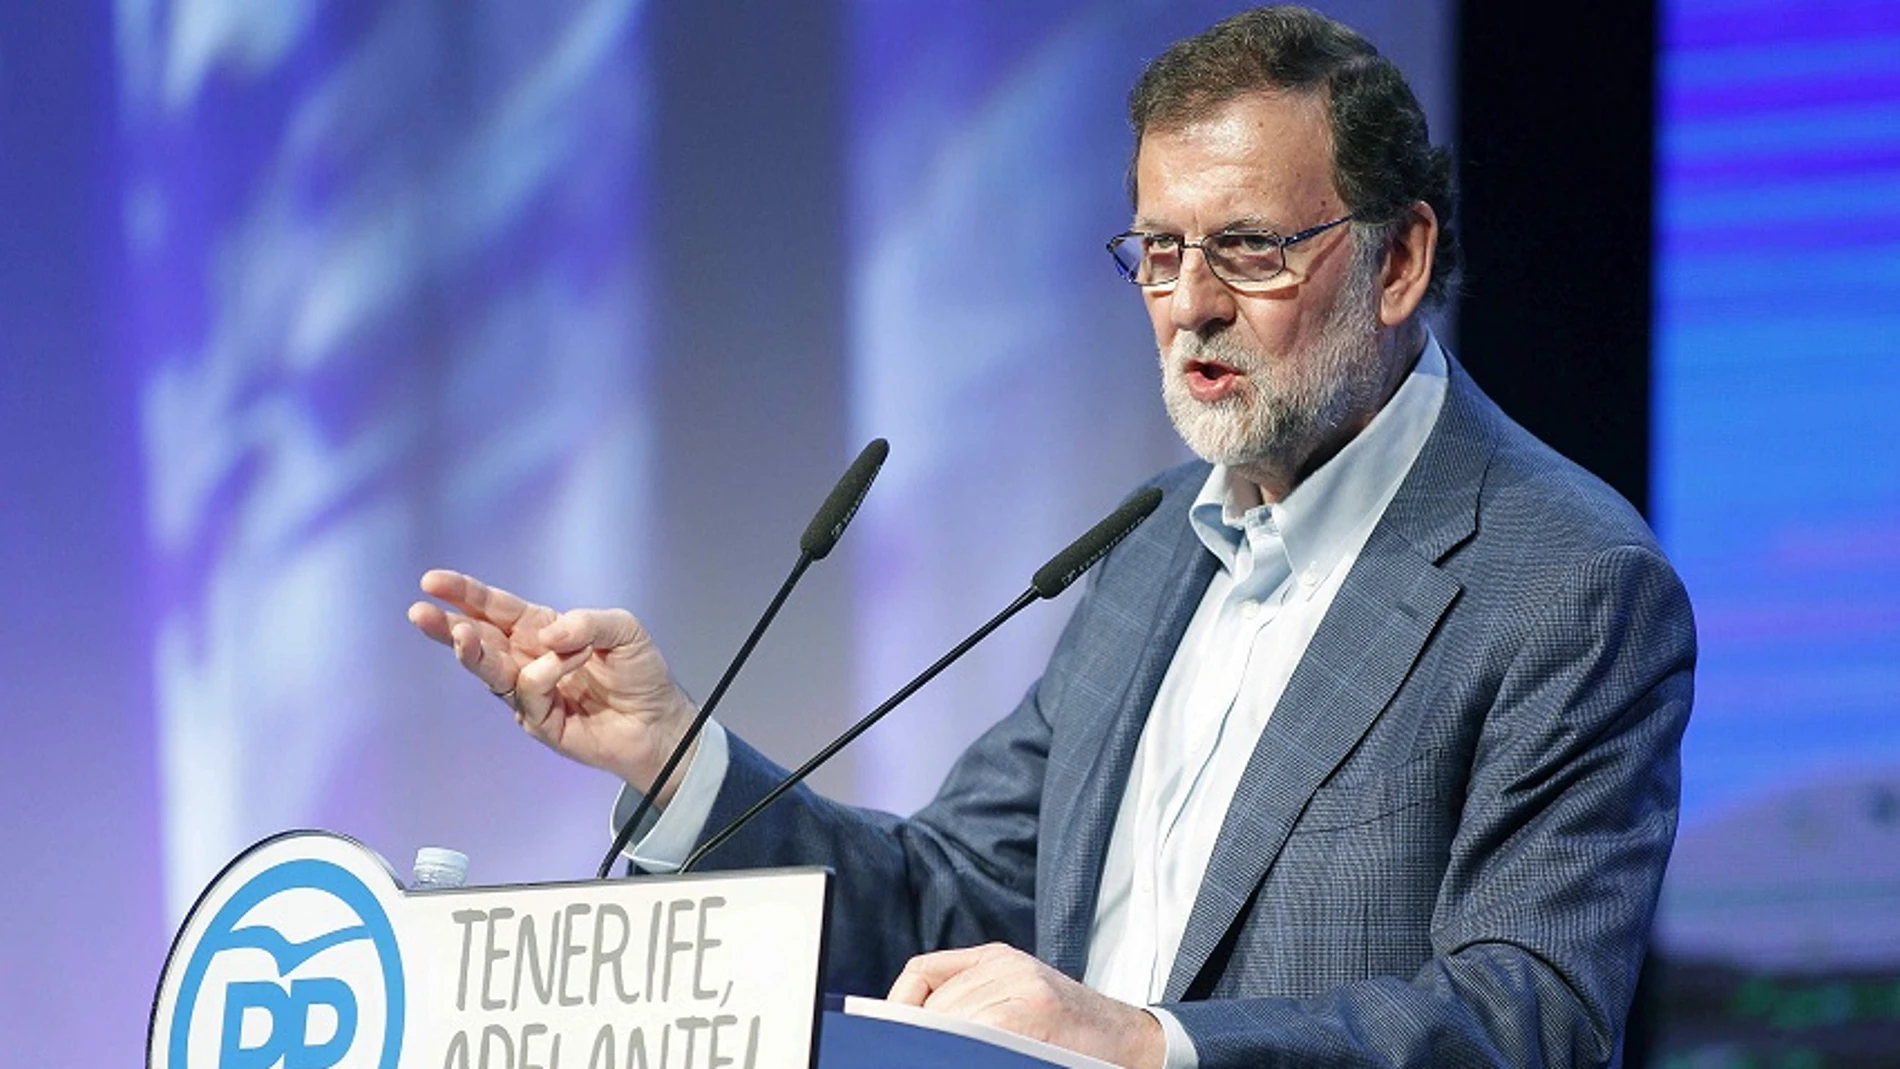 El presidente del Gobierno y del PP, Mariano Rajoy, durante su intervención hoy en la clausura del VIII Congreso Insulardel partido en Tenerife